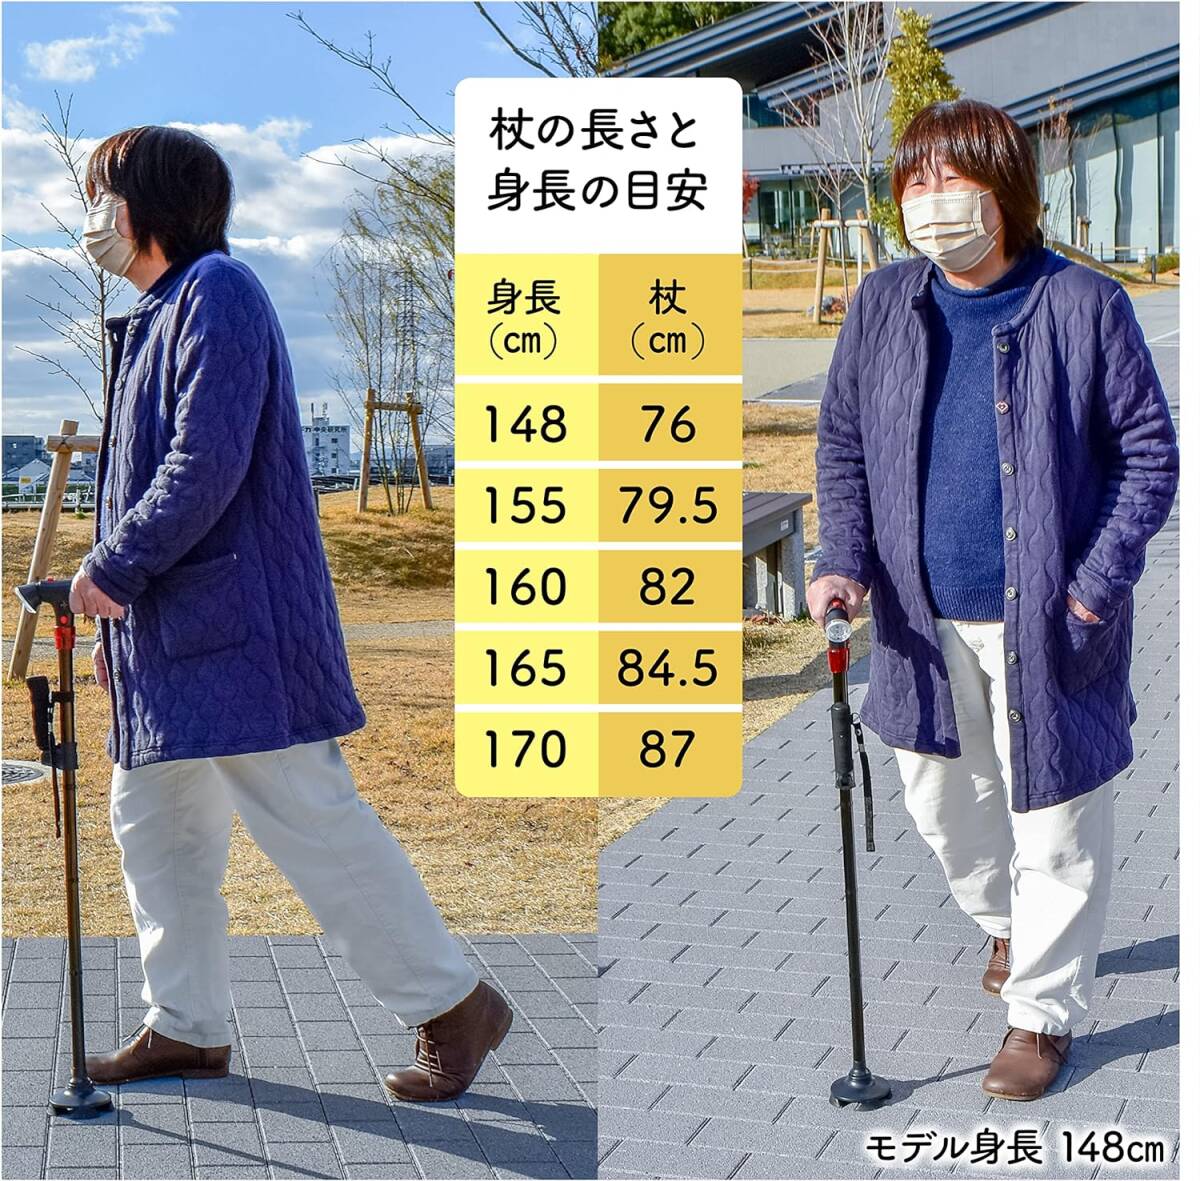  многофункциональный трость [ Kyoto ..yama солнечный ] многофункциональный трость 4шт.@ пара складной трость трость [ для мужчин и женщин высота 76~87cm( рост стандарт 148~170cm